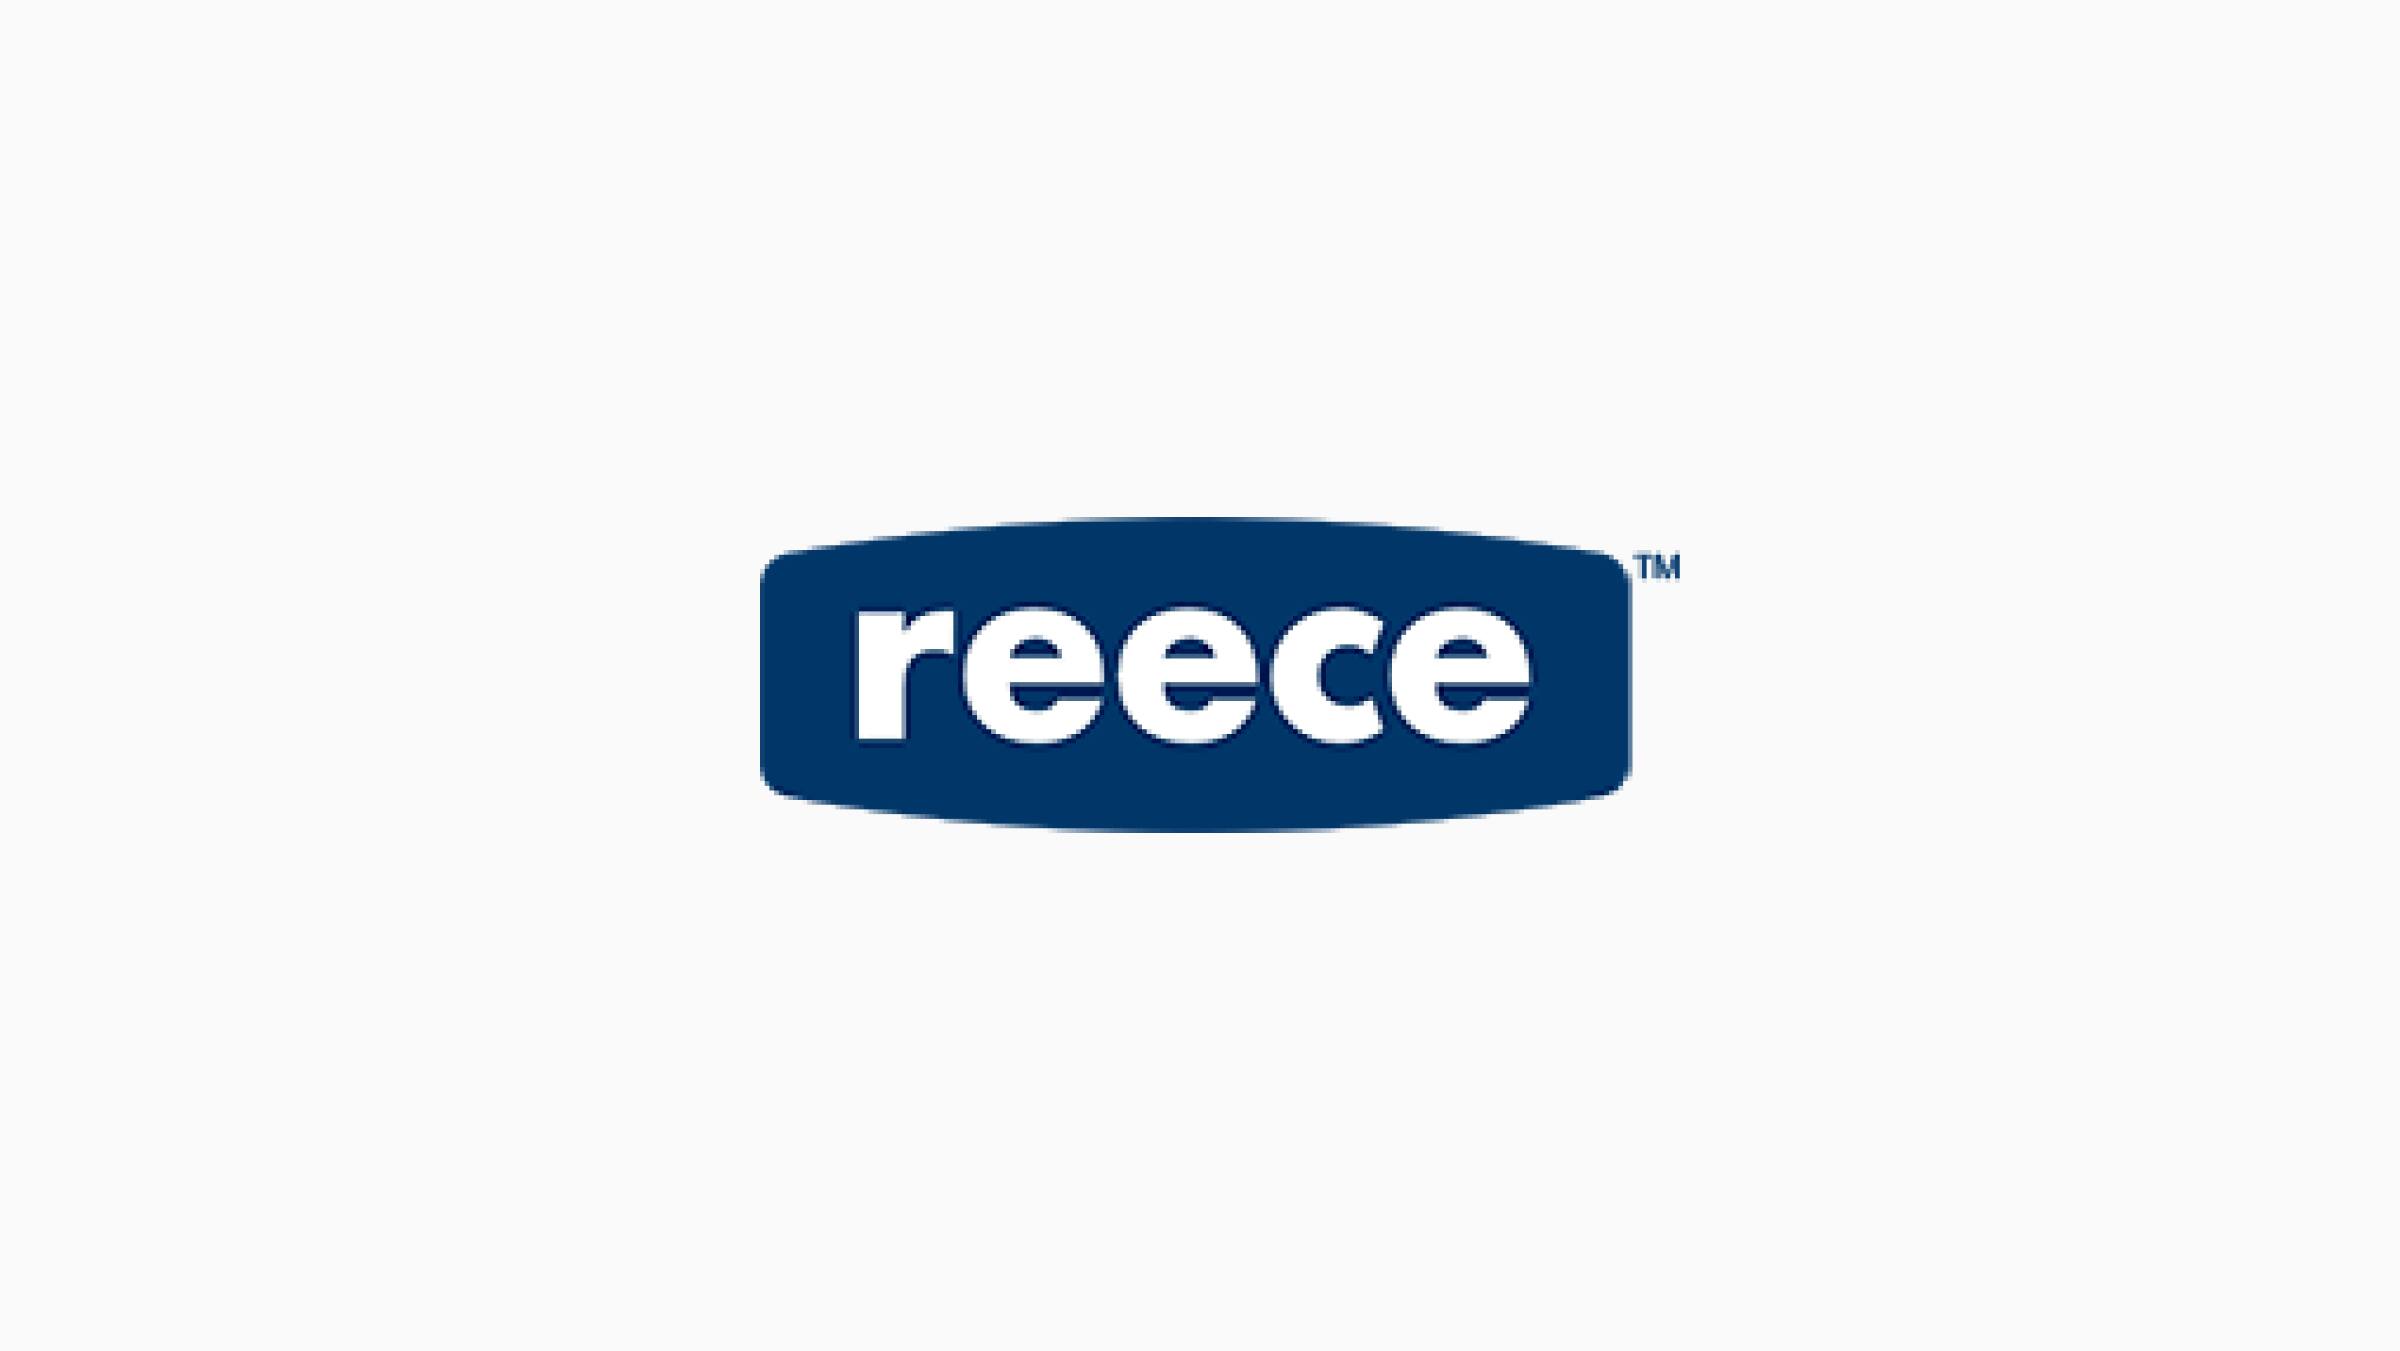 The Reece logo